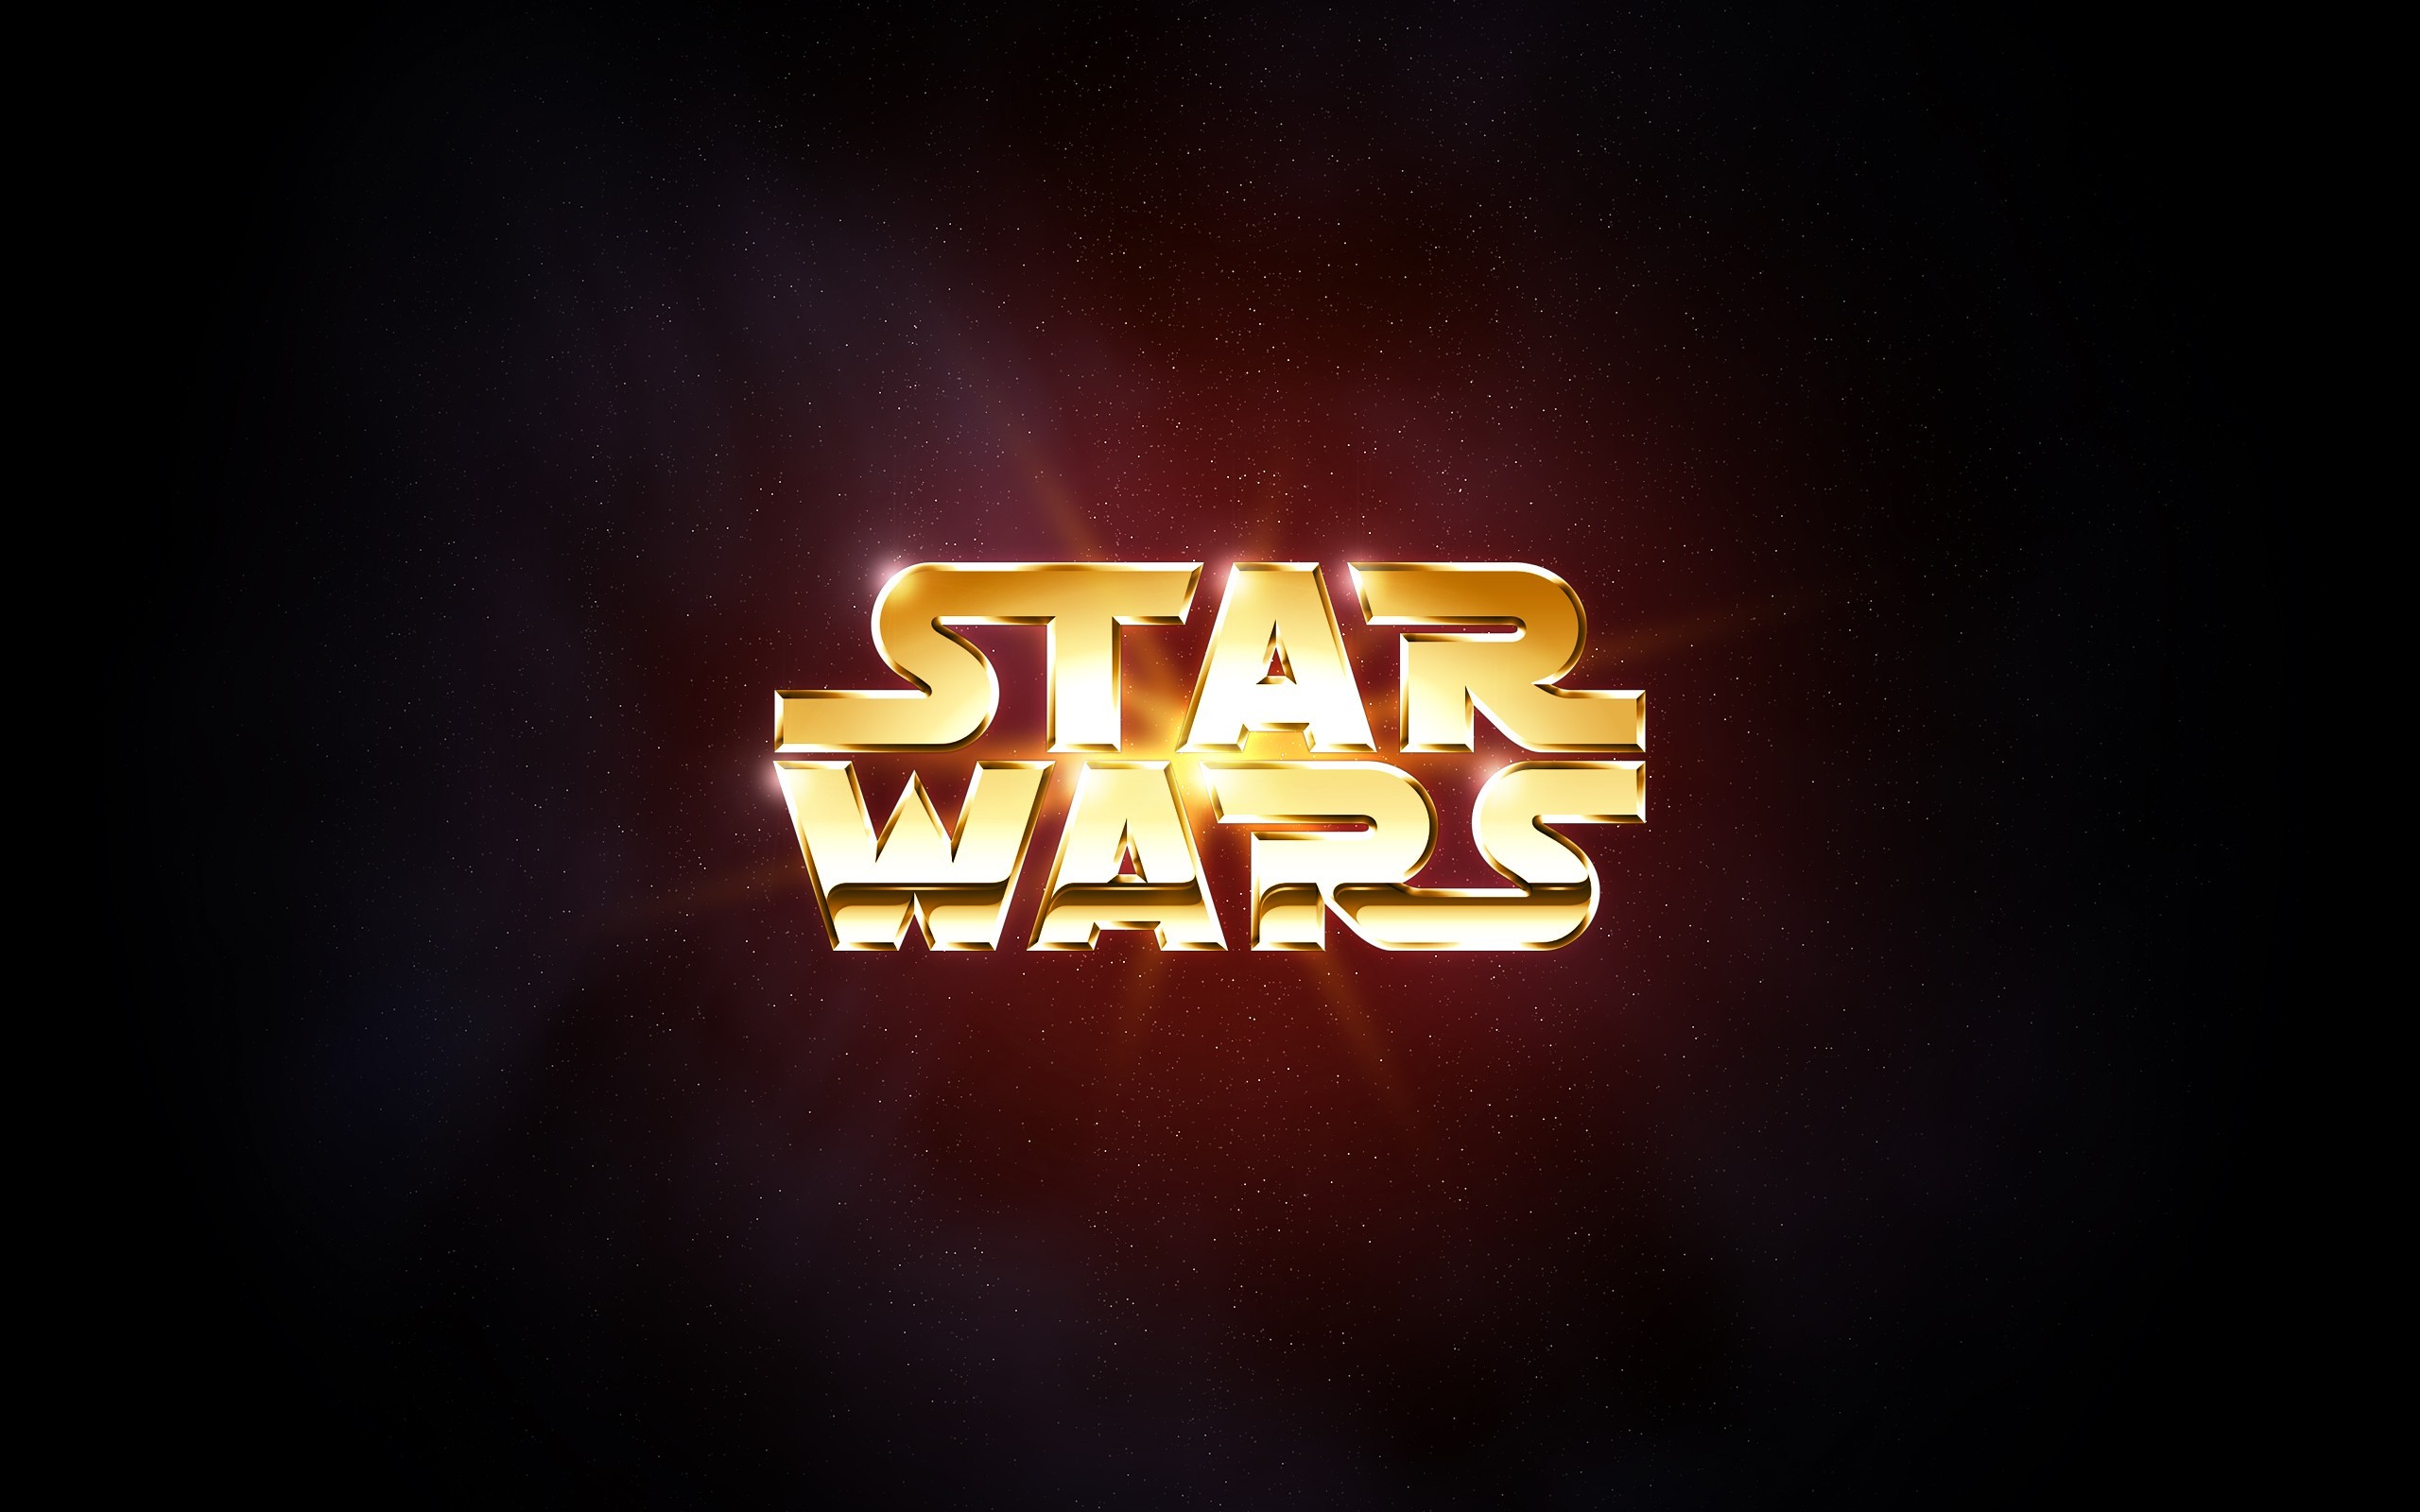 Star Wars Galaxy of Heroes aangekondigd voor mobile